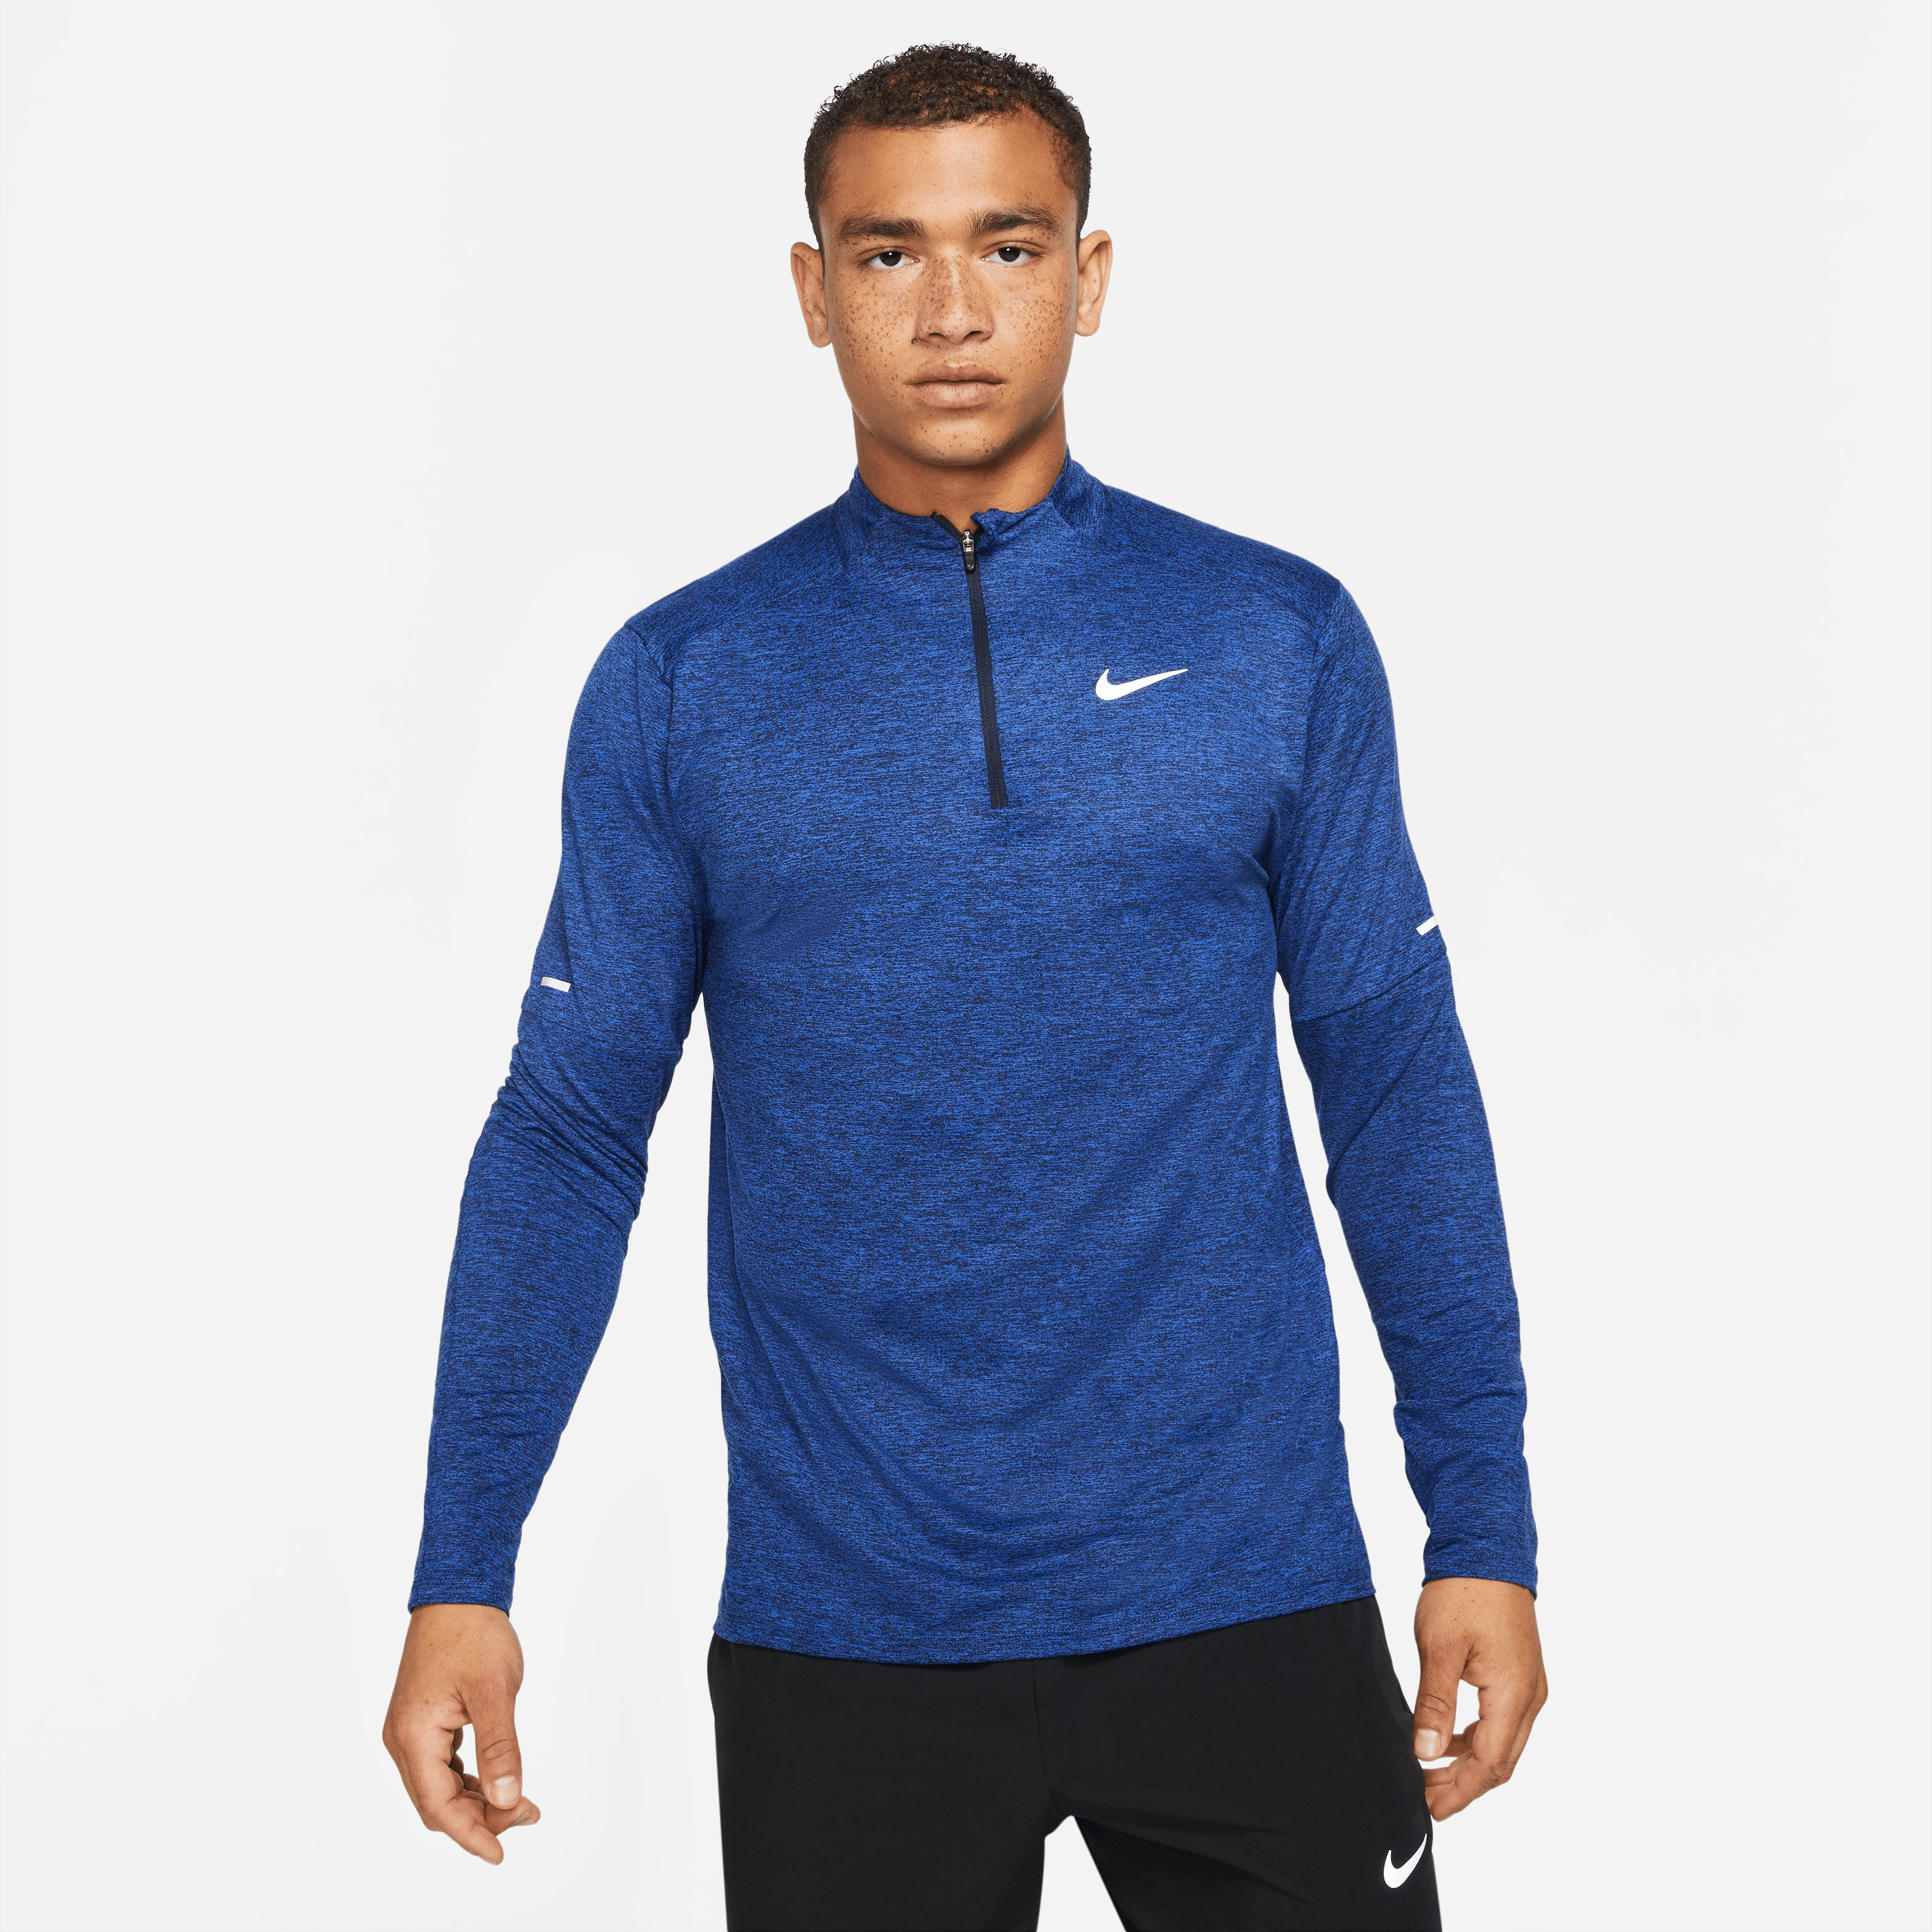 Nike Dri-FIT Element Men's 1/4-Zip Running Top » Tenis Shop